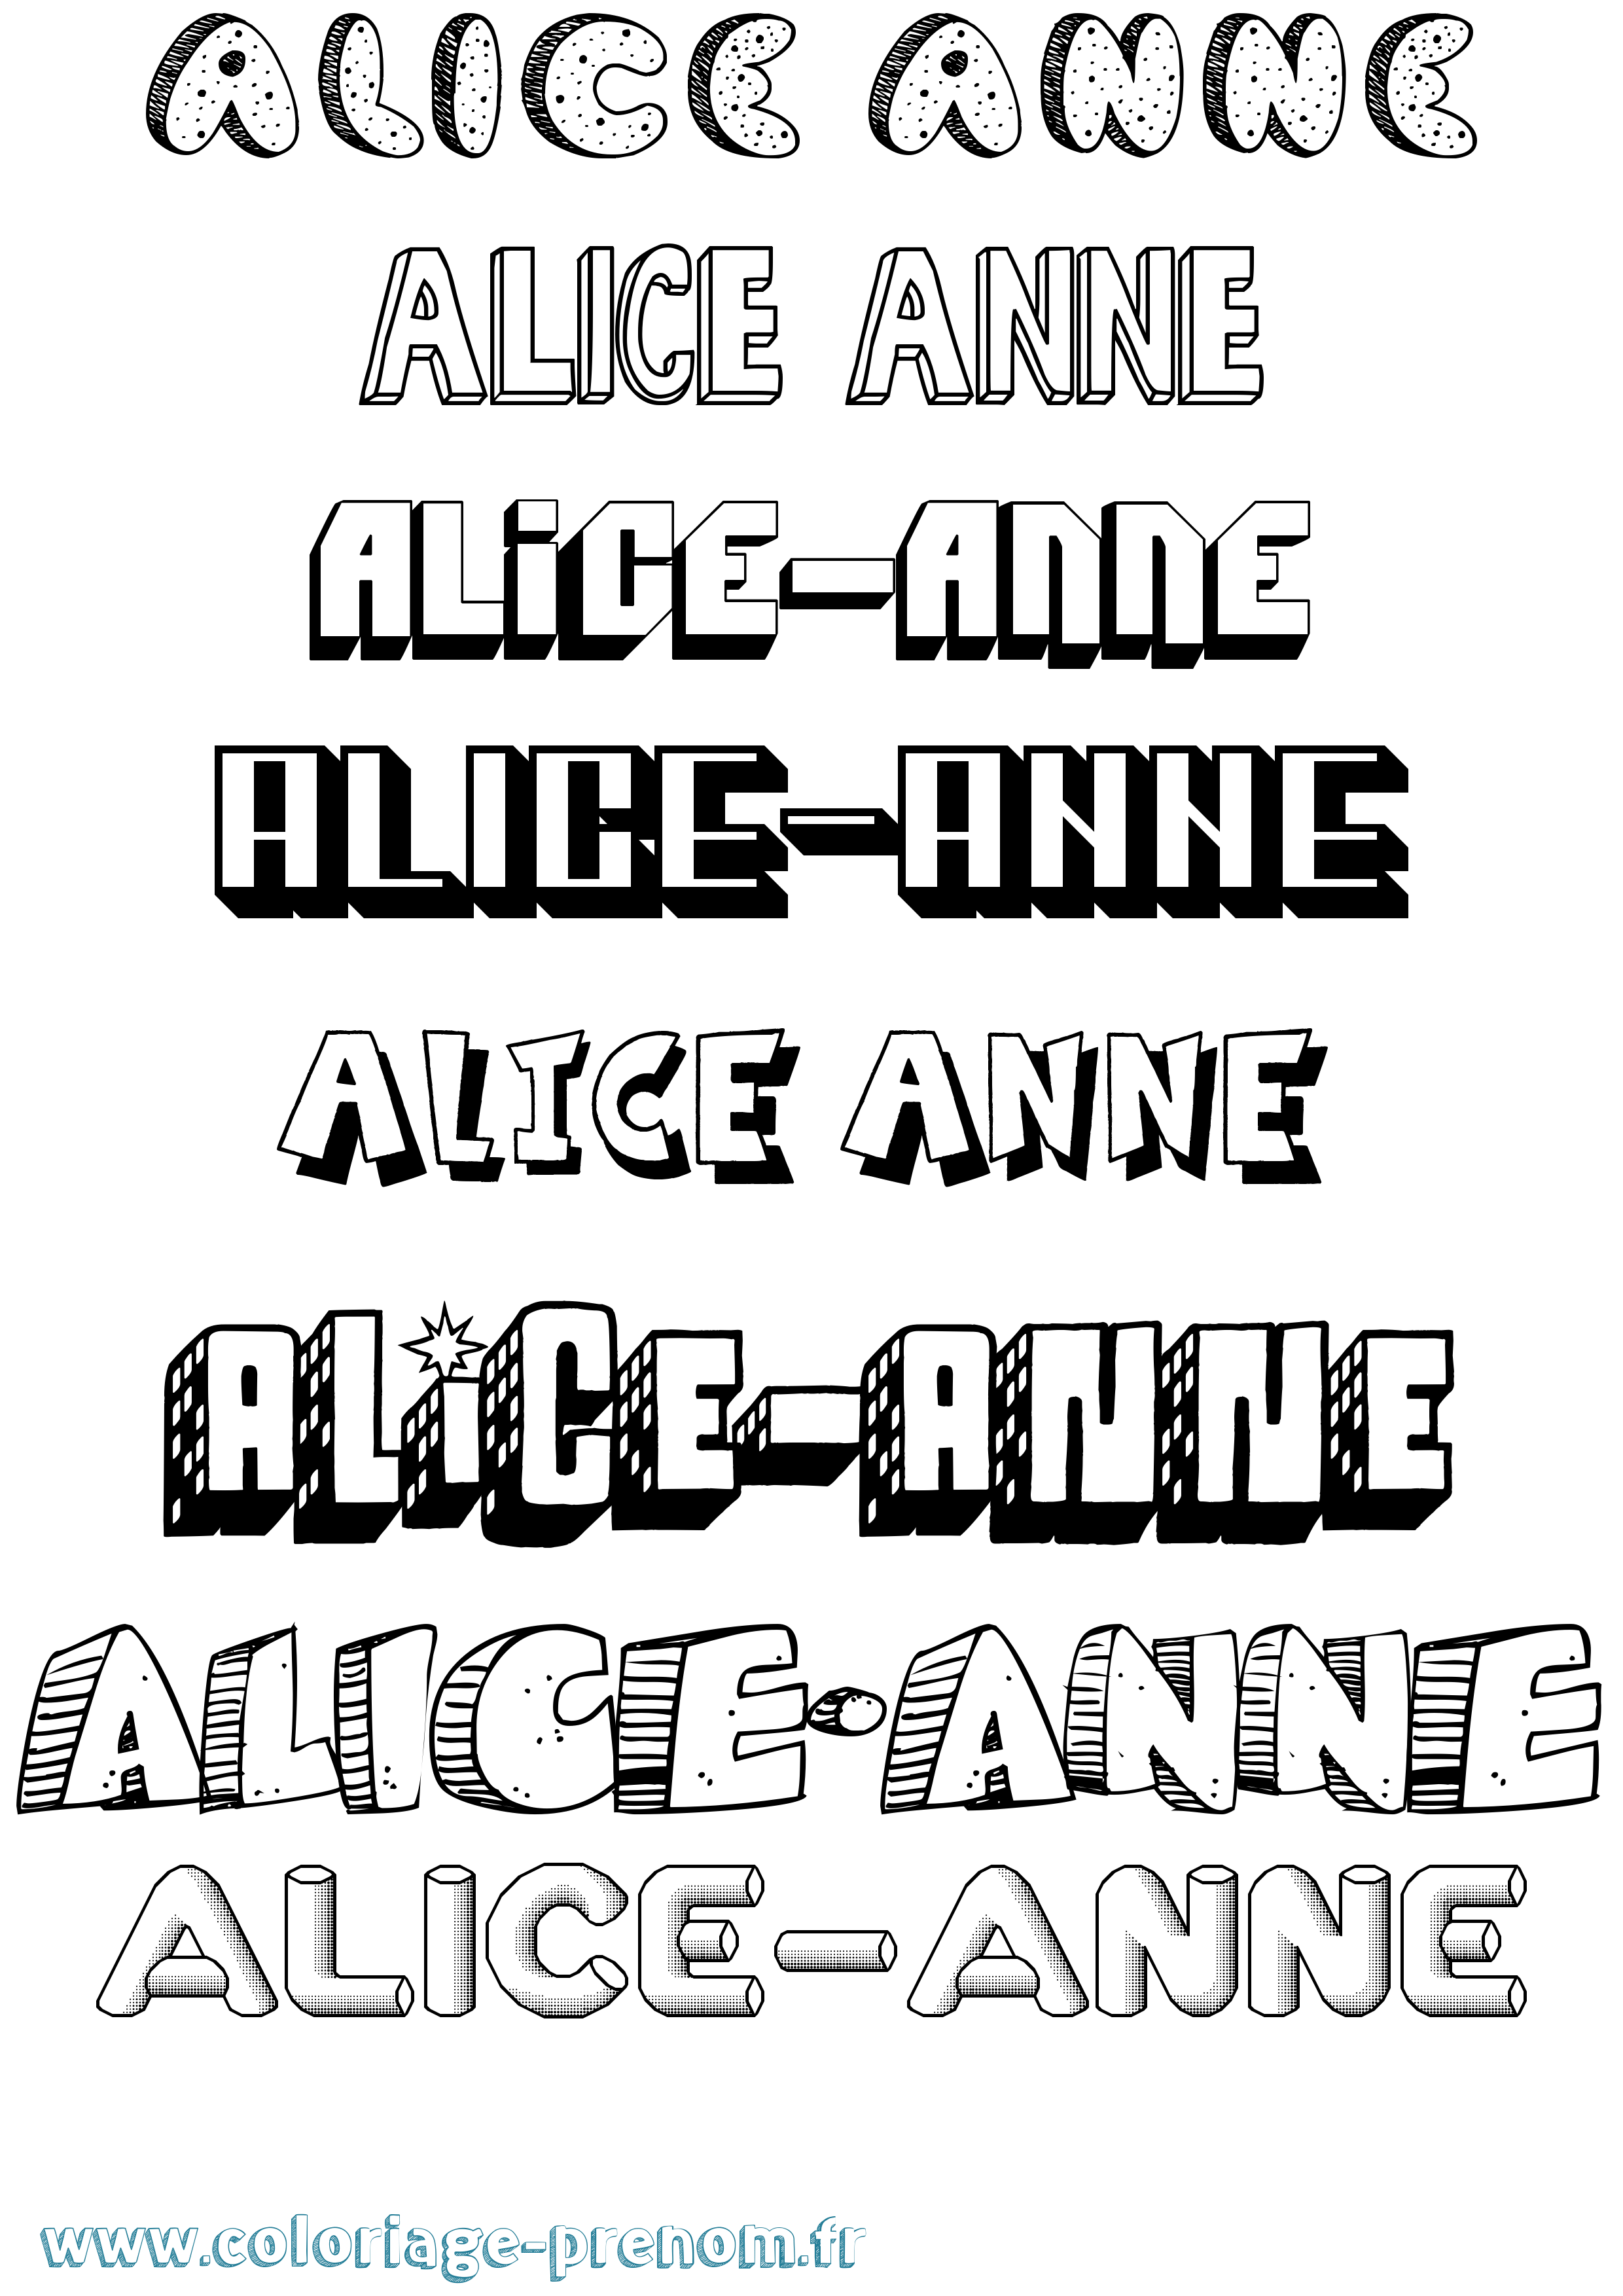 Coloriage prénom Alice-Anne Effet 3D